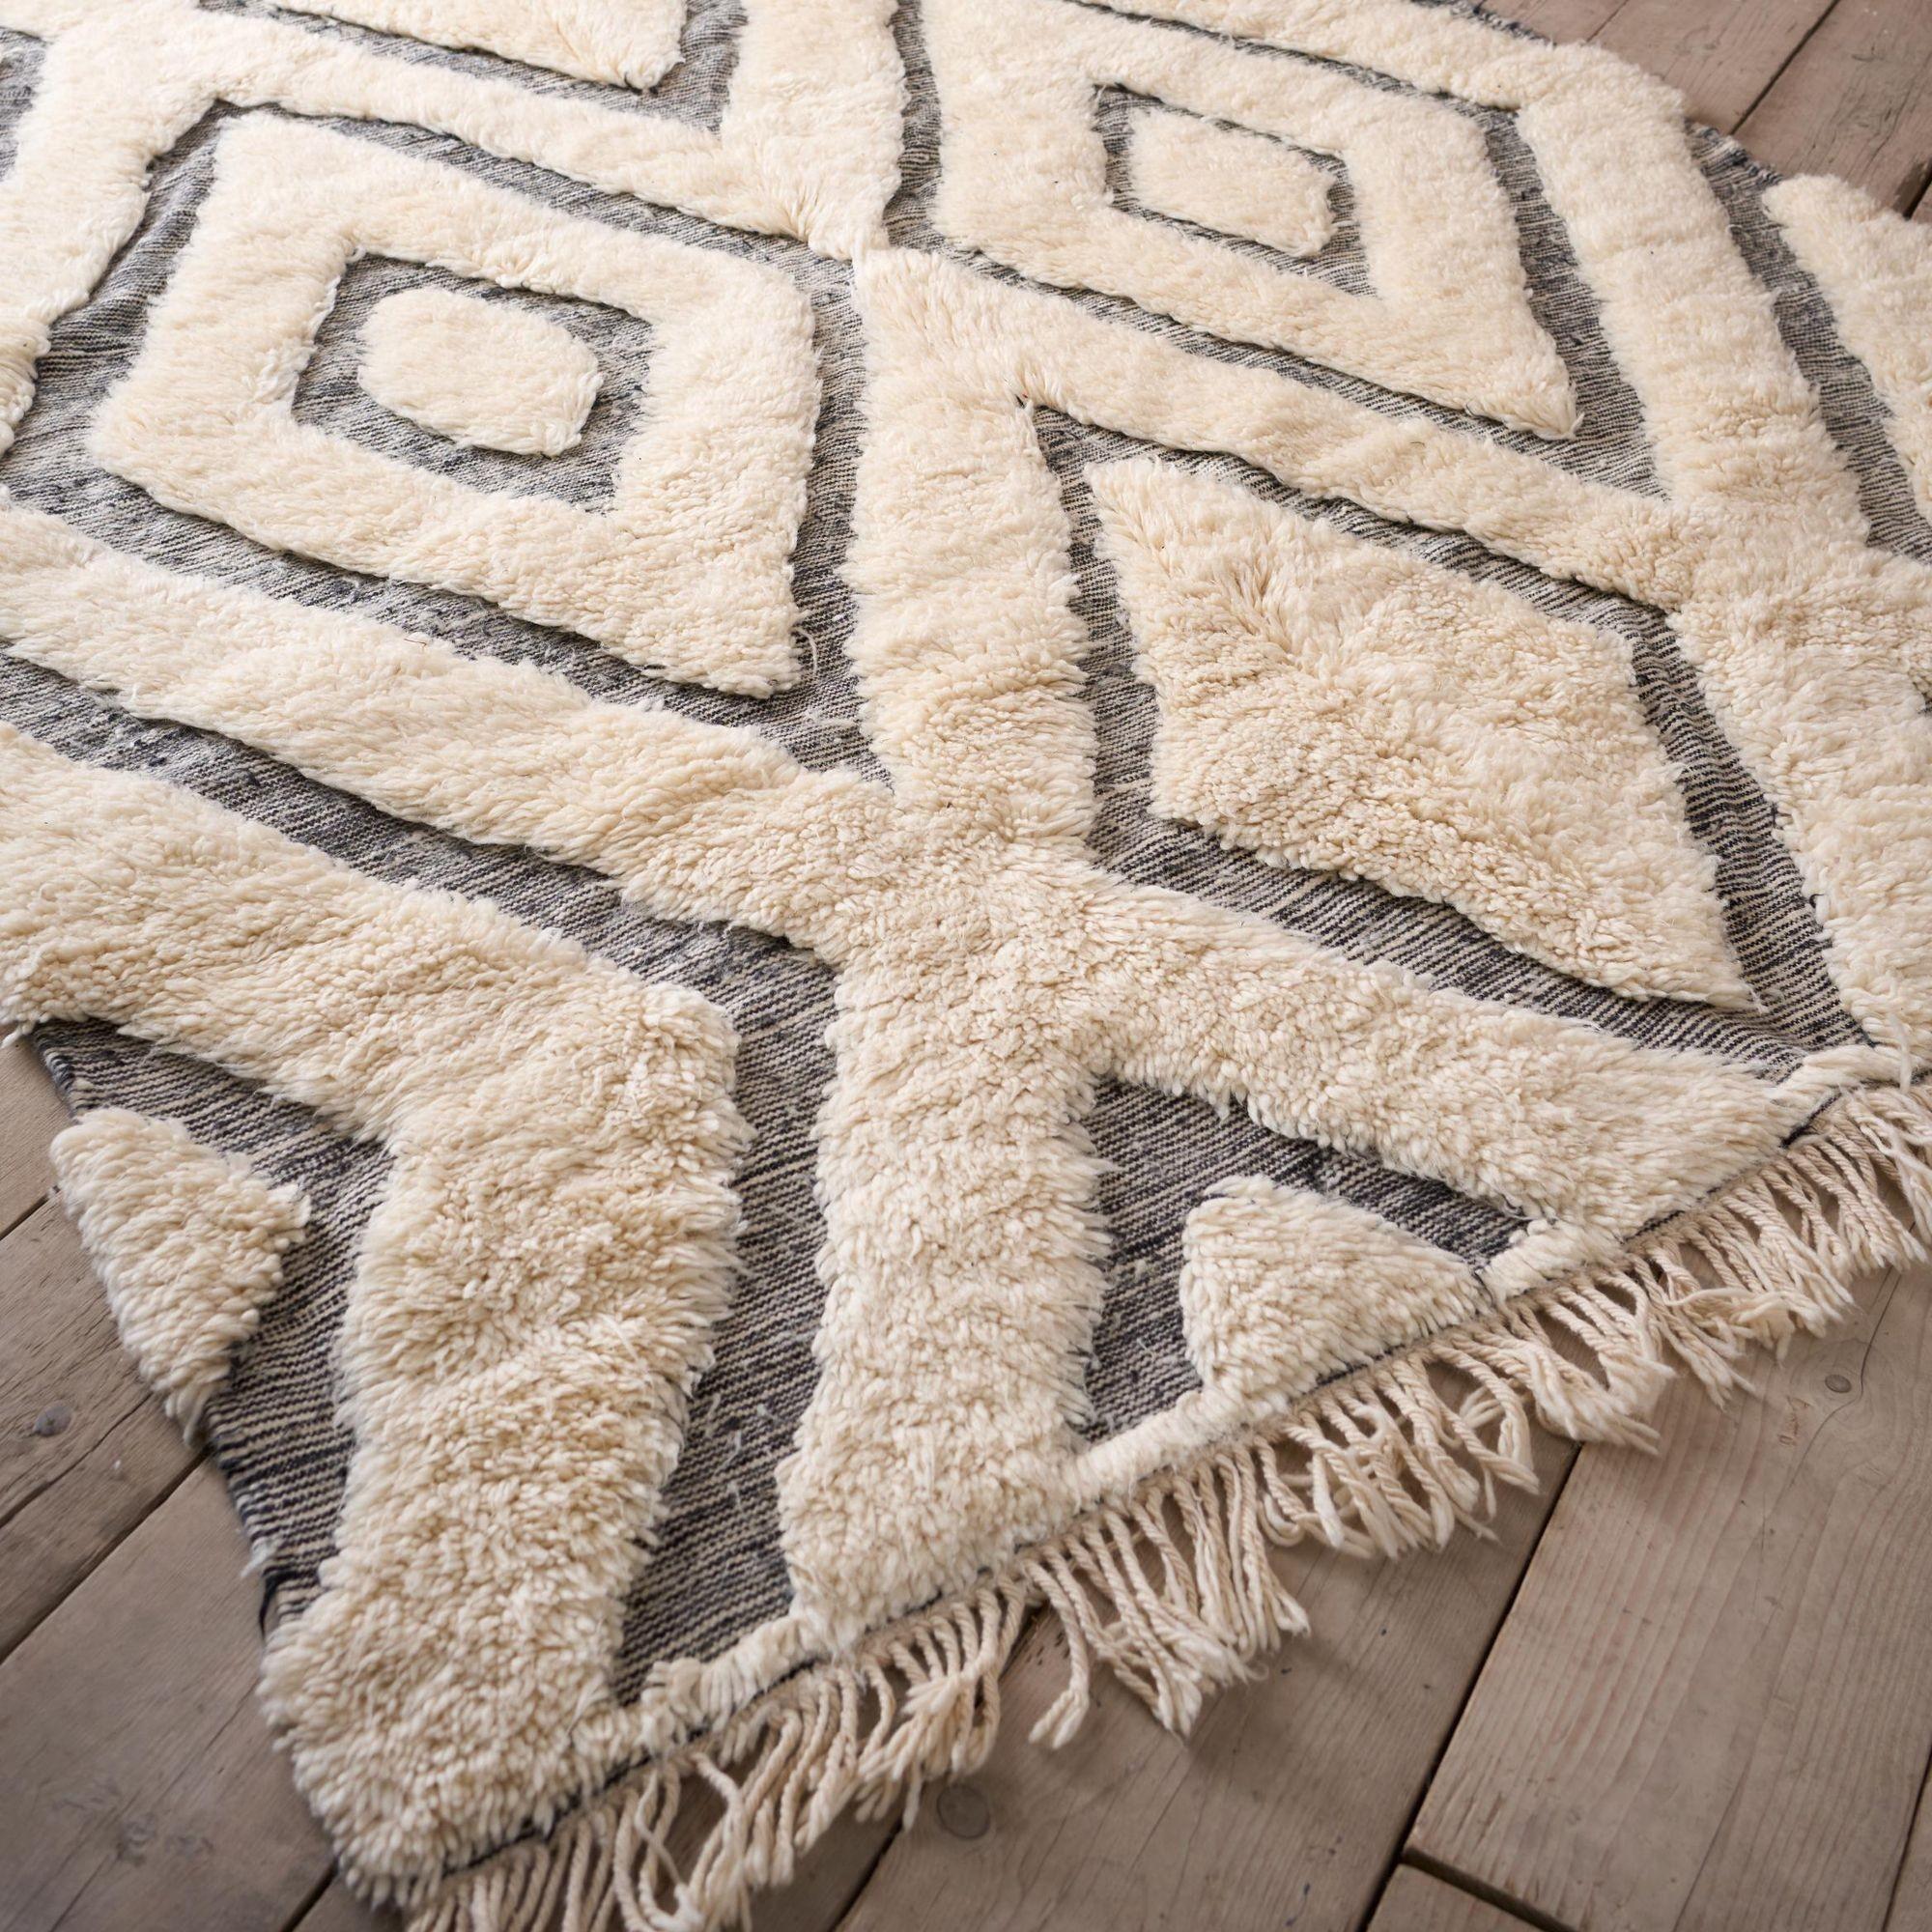 Wir haben mit einem Hersteller traditioneller Teppiche in Marokko zusammengearbeitet, und ich war von der Qualität ihrer Stücke absolut überwältigt. Ihre Liebe zum Detail und die Beibehaltung der ursprünglichen Webmethoden der vergangenen